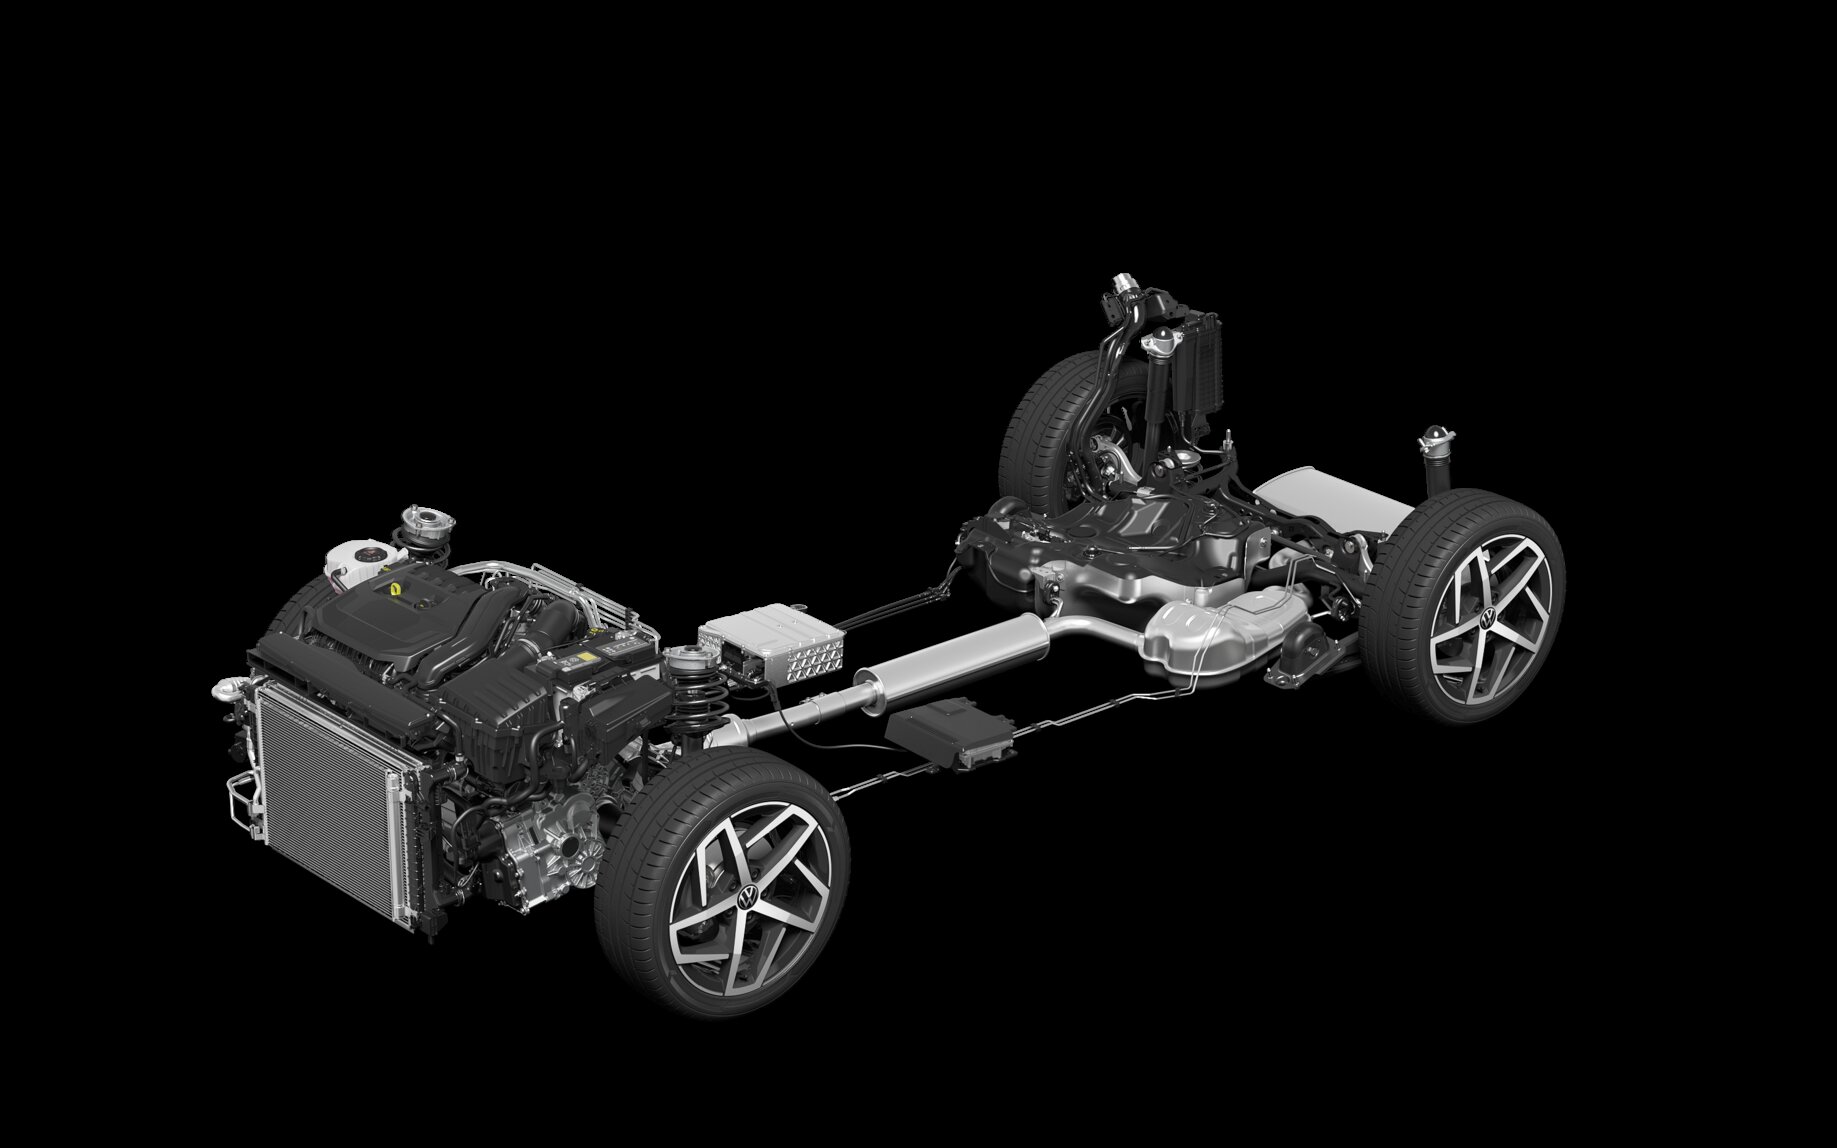 Motory TSI evo (eTSI) se zdvihovým objemem 1,0 a 1,5 litru jsou doma v téměř všech modelových řadách Volkswagenu